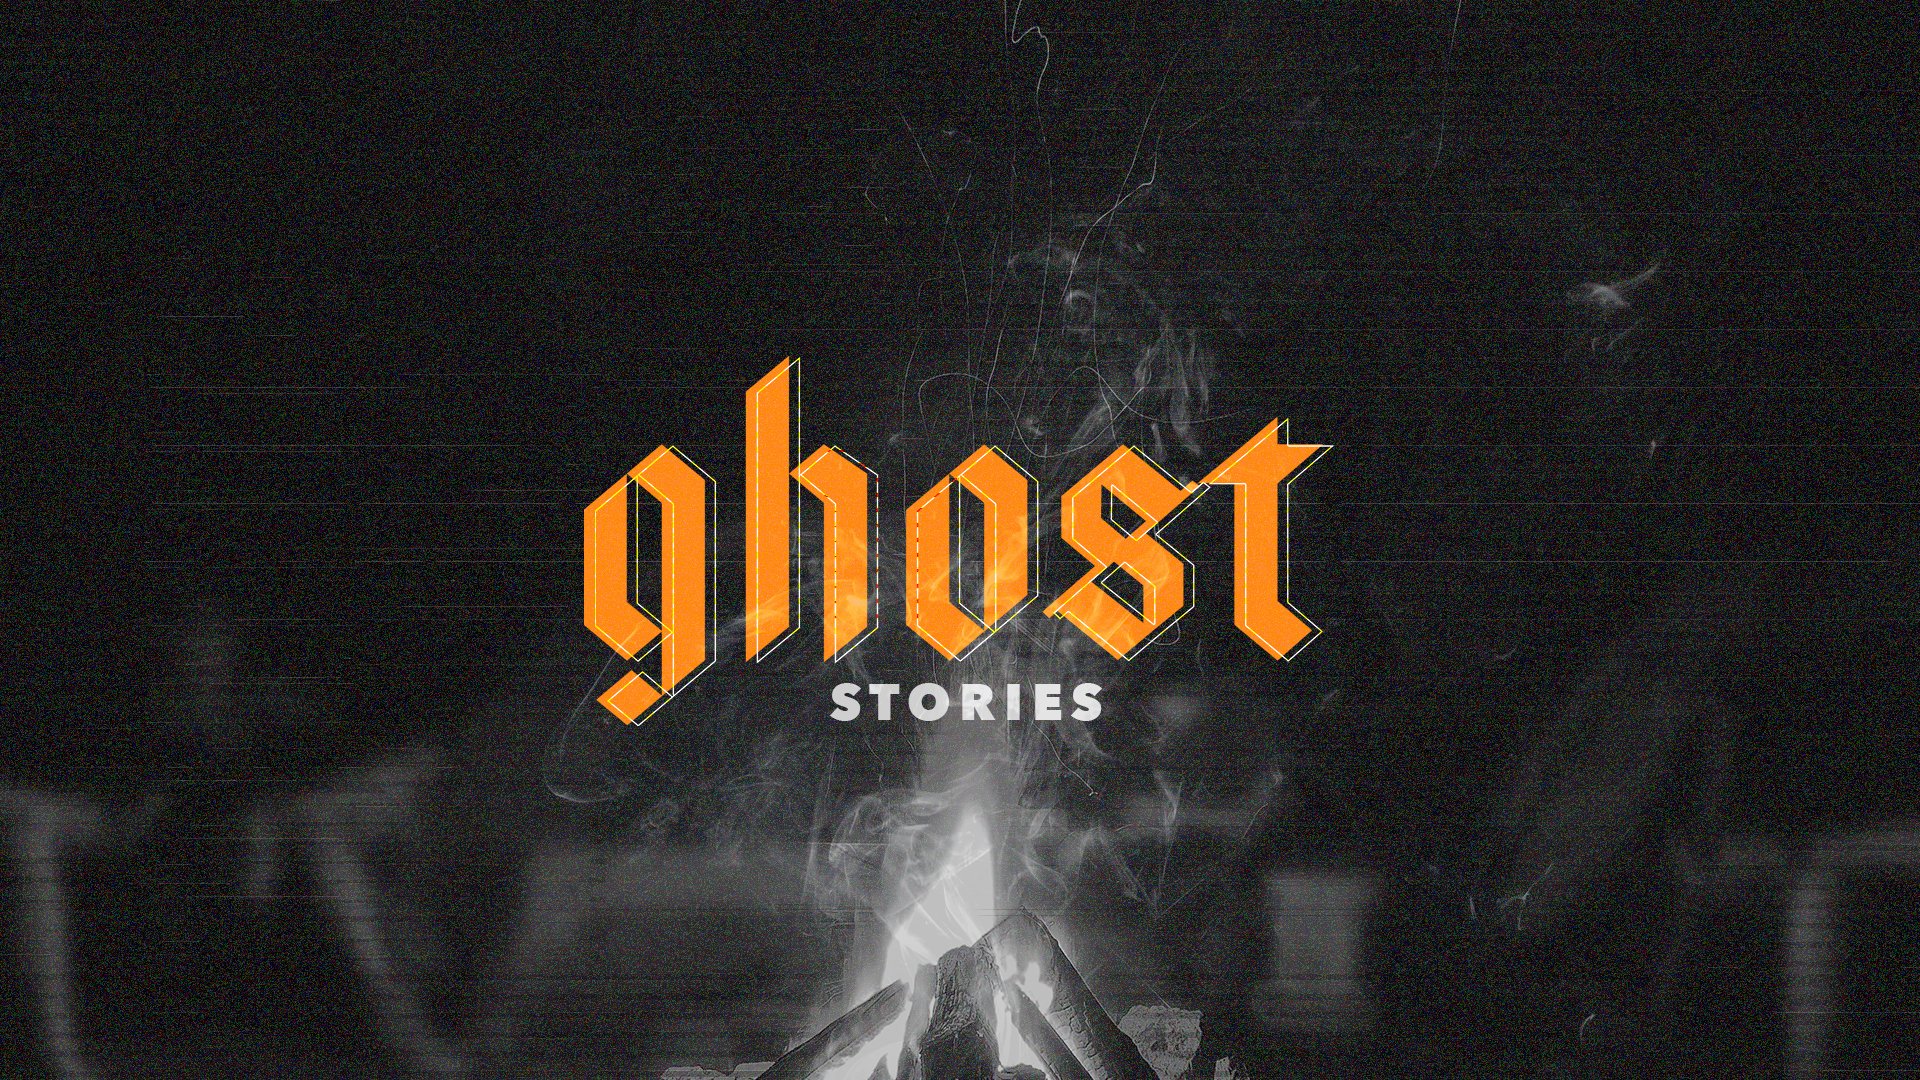 Ghost-Stories_Title Slide.jpg